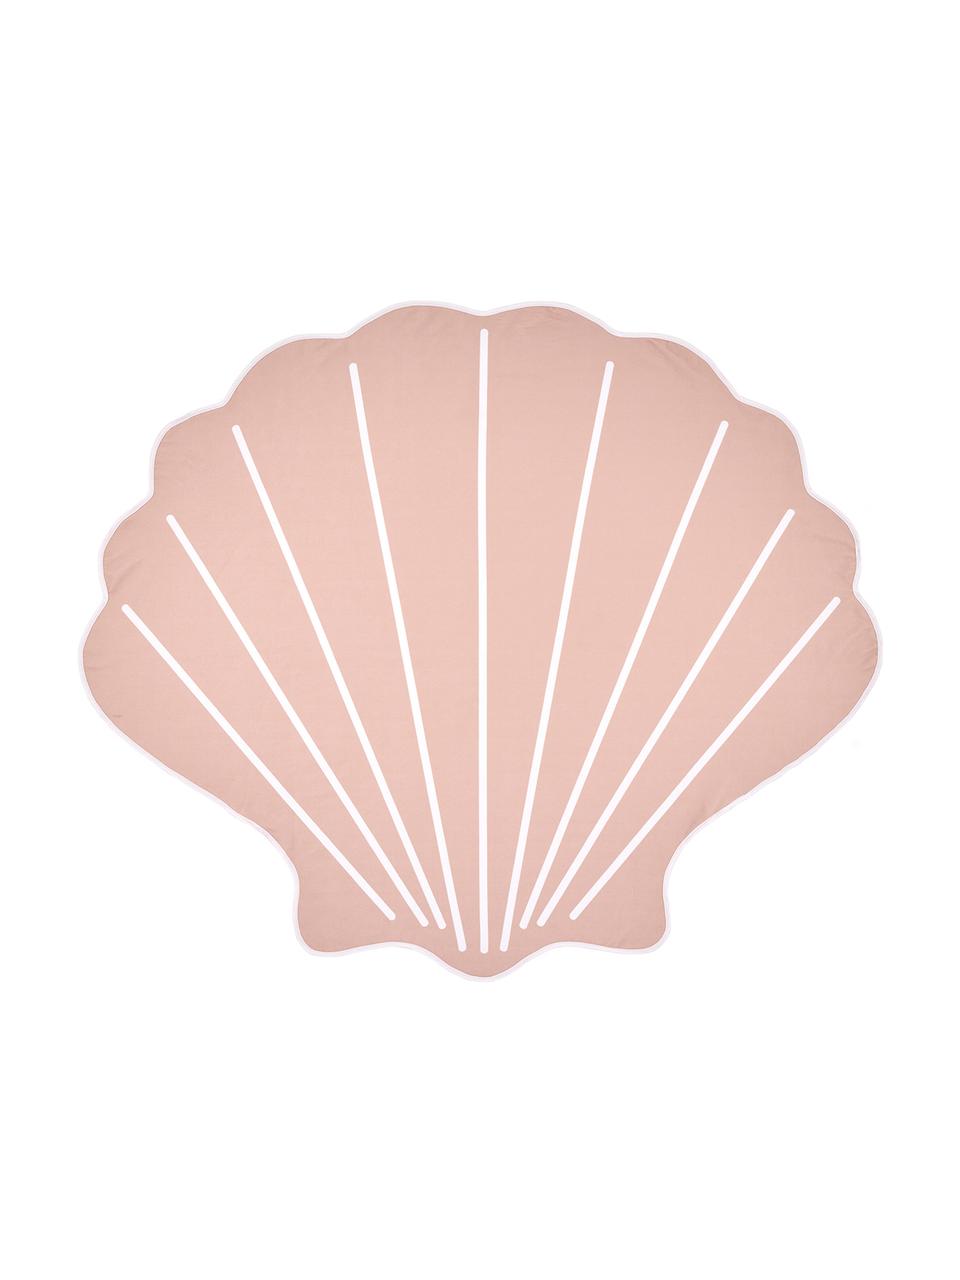 Plážová osuška Shelly , Muschelform, Ružová, biela